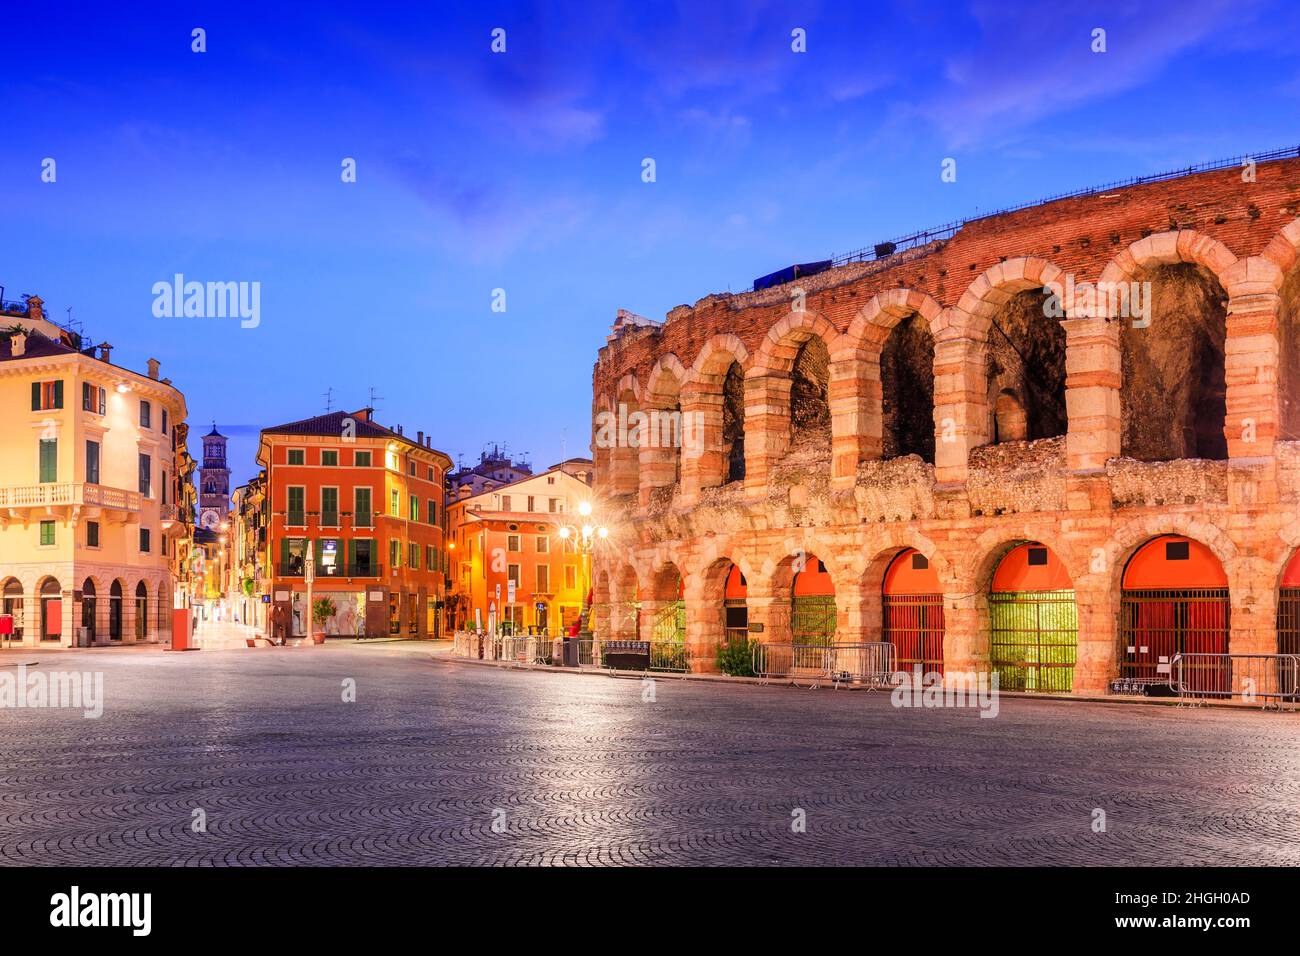 Verona, Italien. Die Arena von Verona, römisches Amphitheater auf der Piazza Bra. Stockfoto